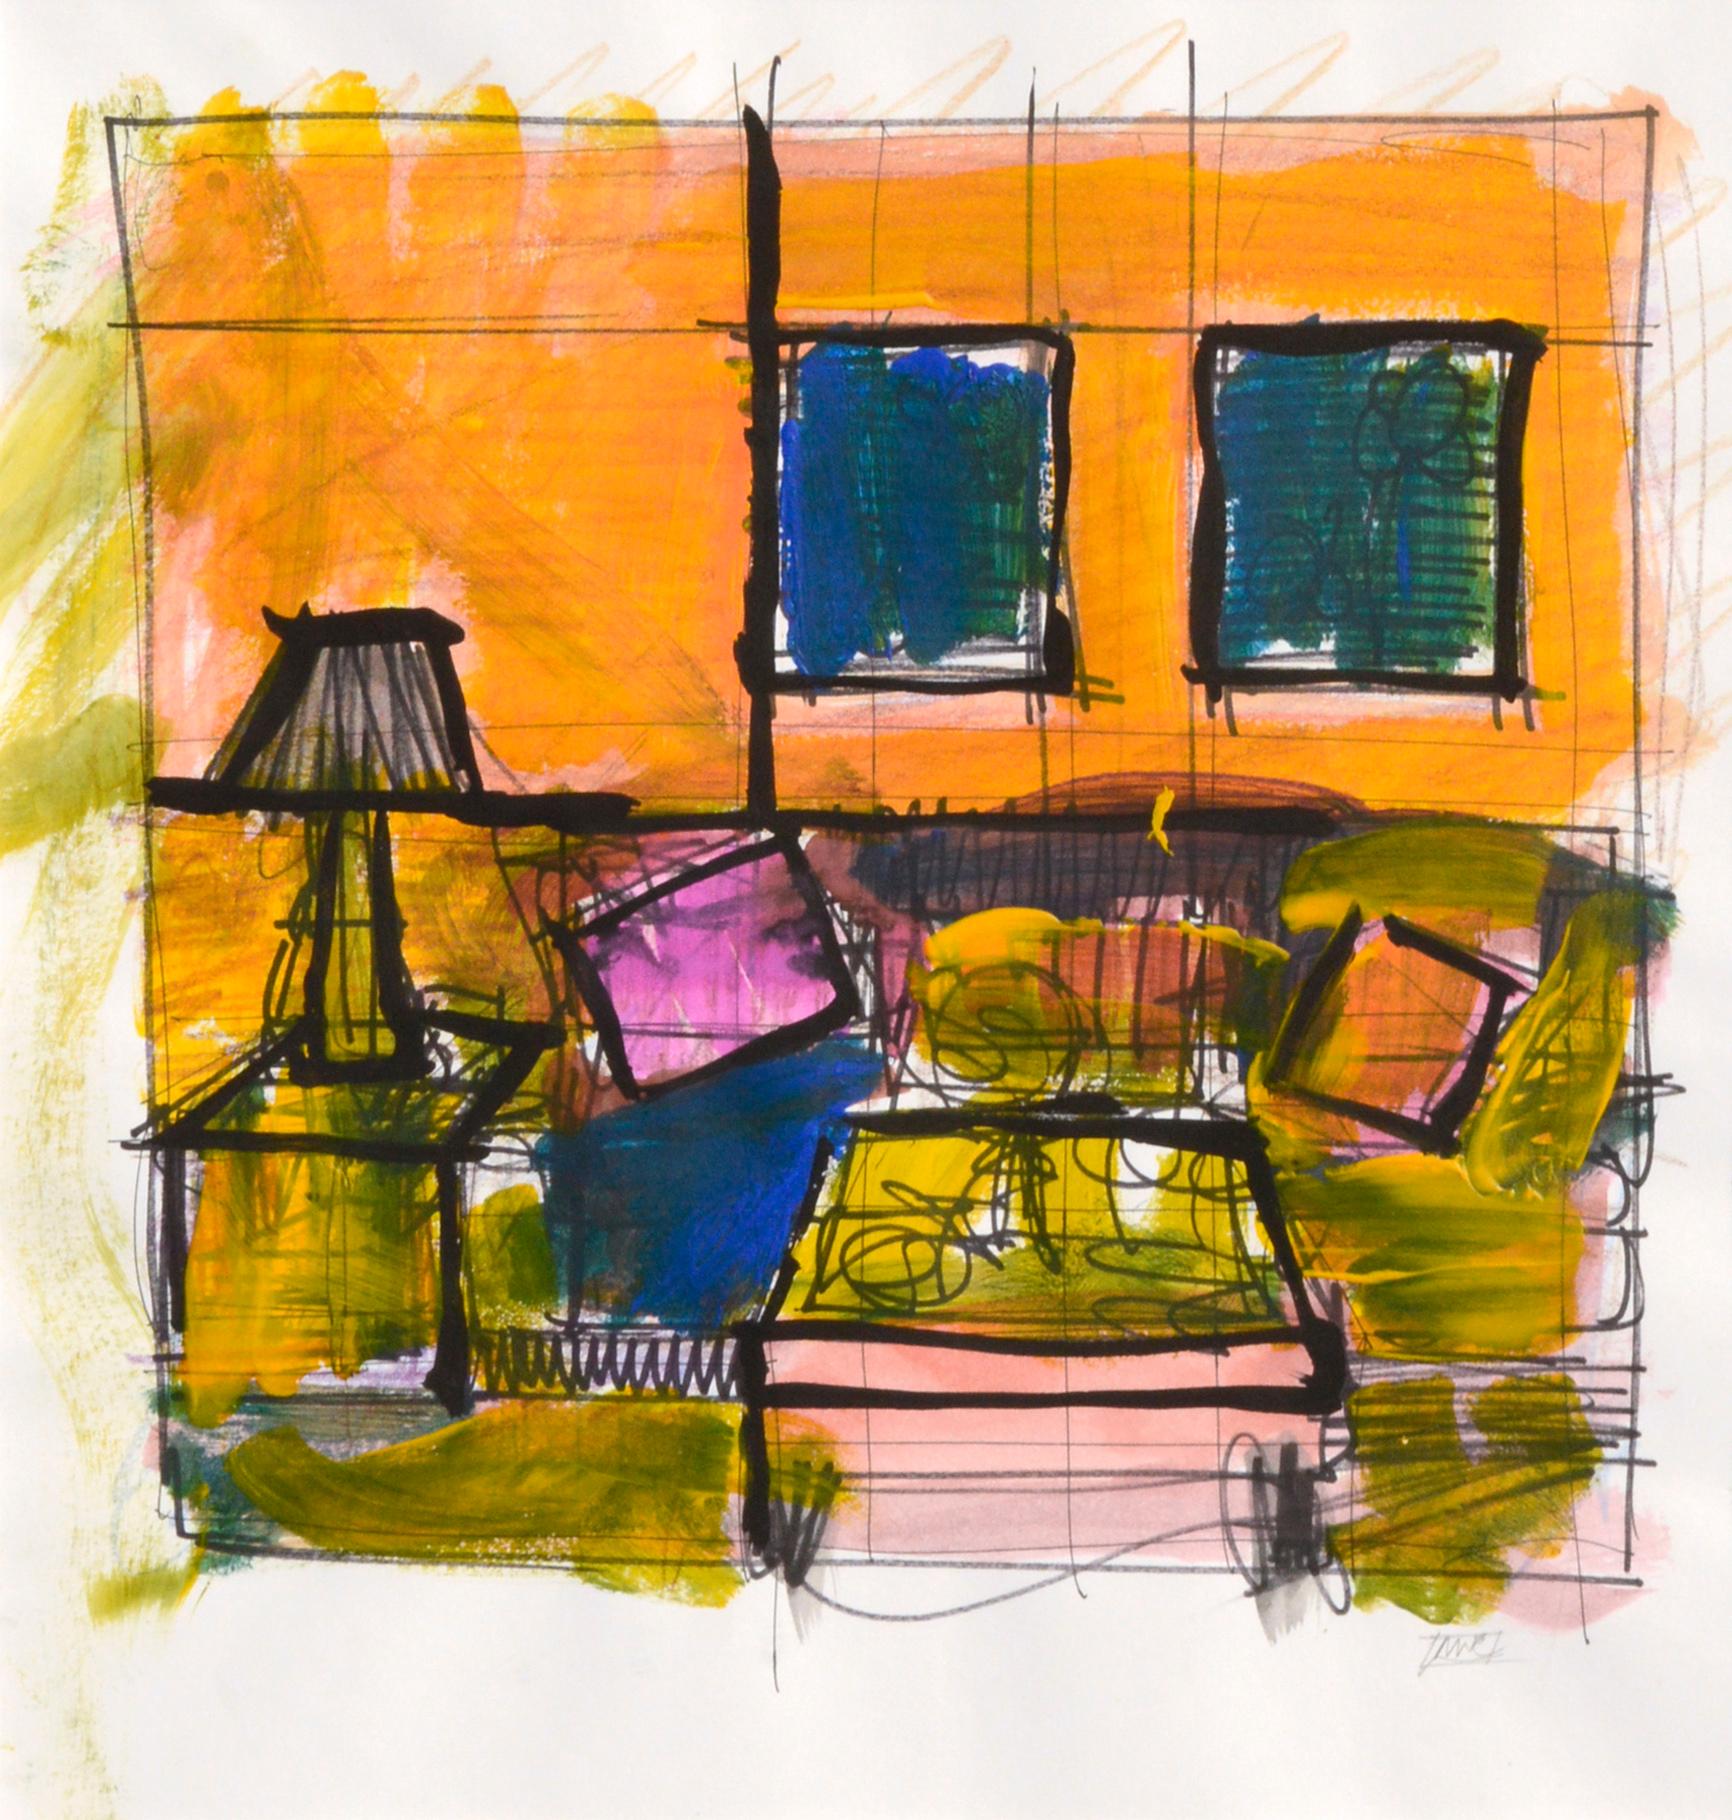 Kubistische Wohnzimmer-Innenszene in Orange, Grün und Blau  (Kubismus), Mixed Media Art, von Michael William Eggleston